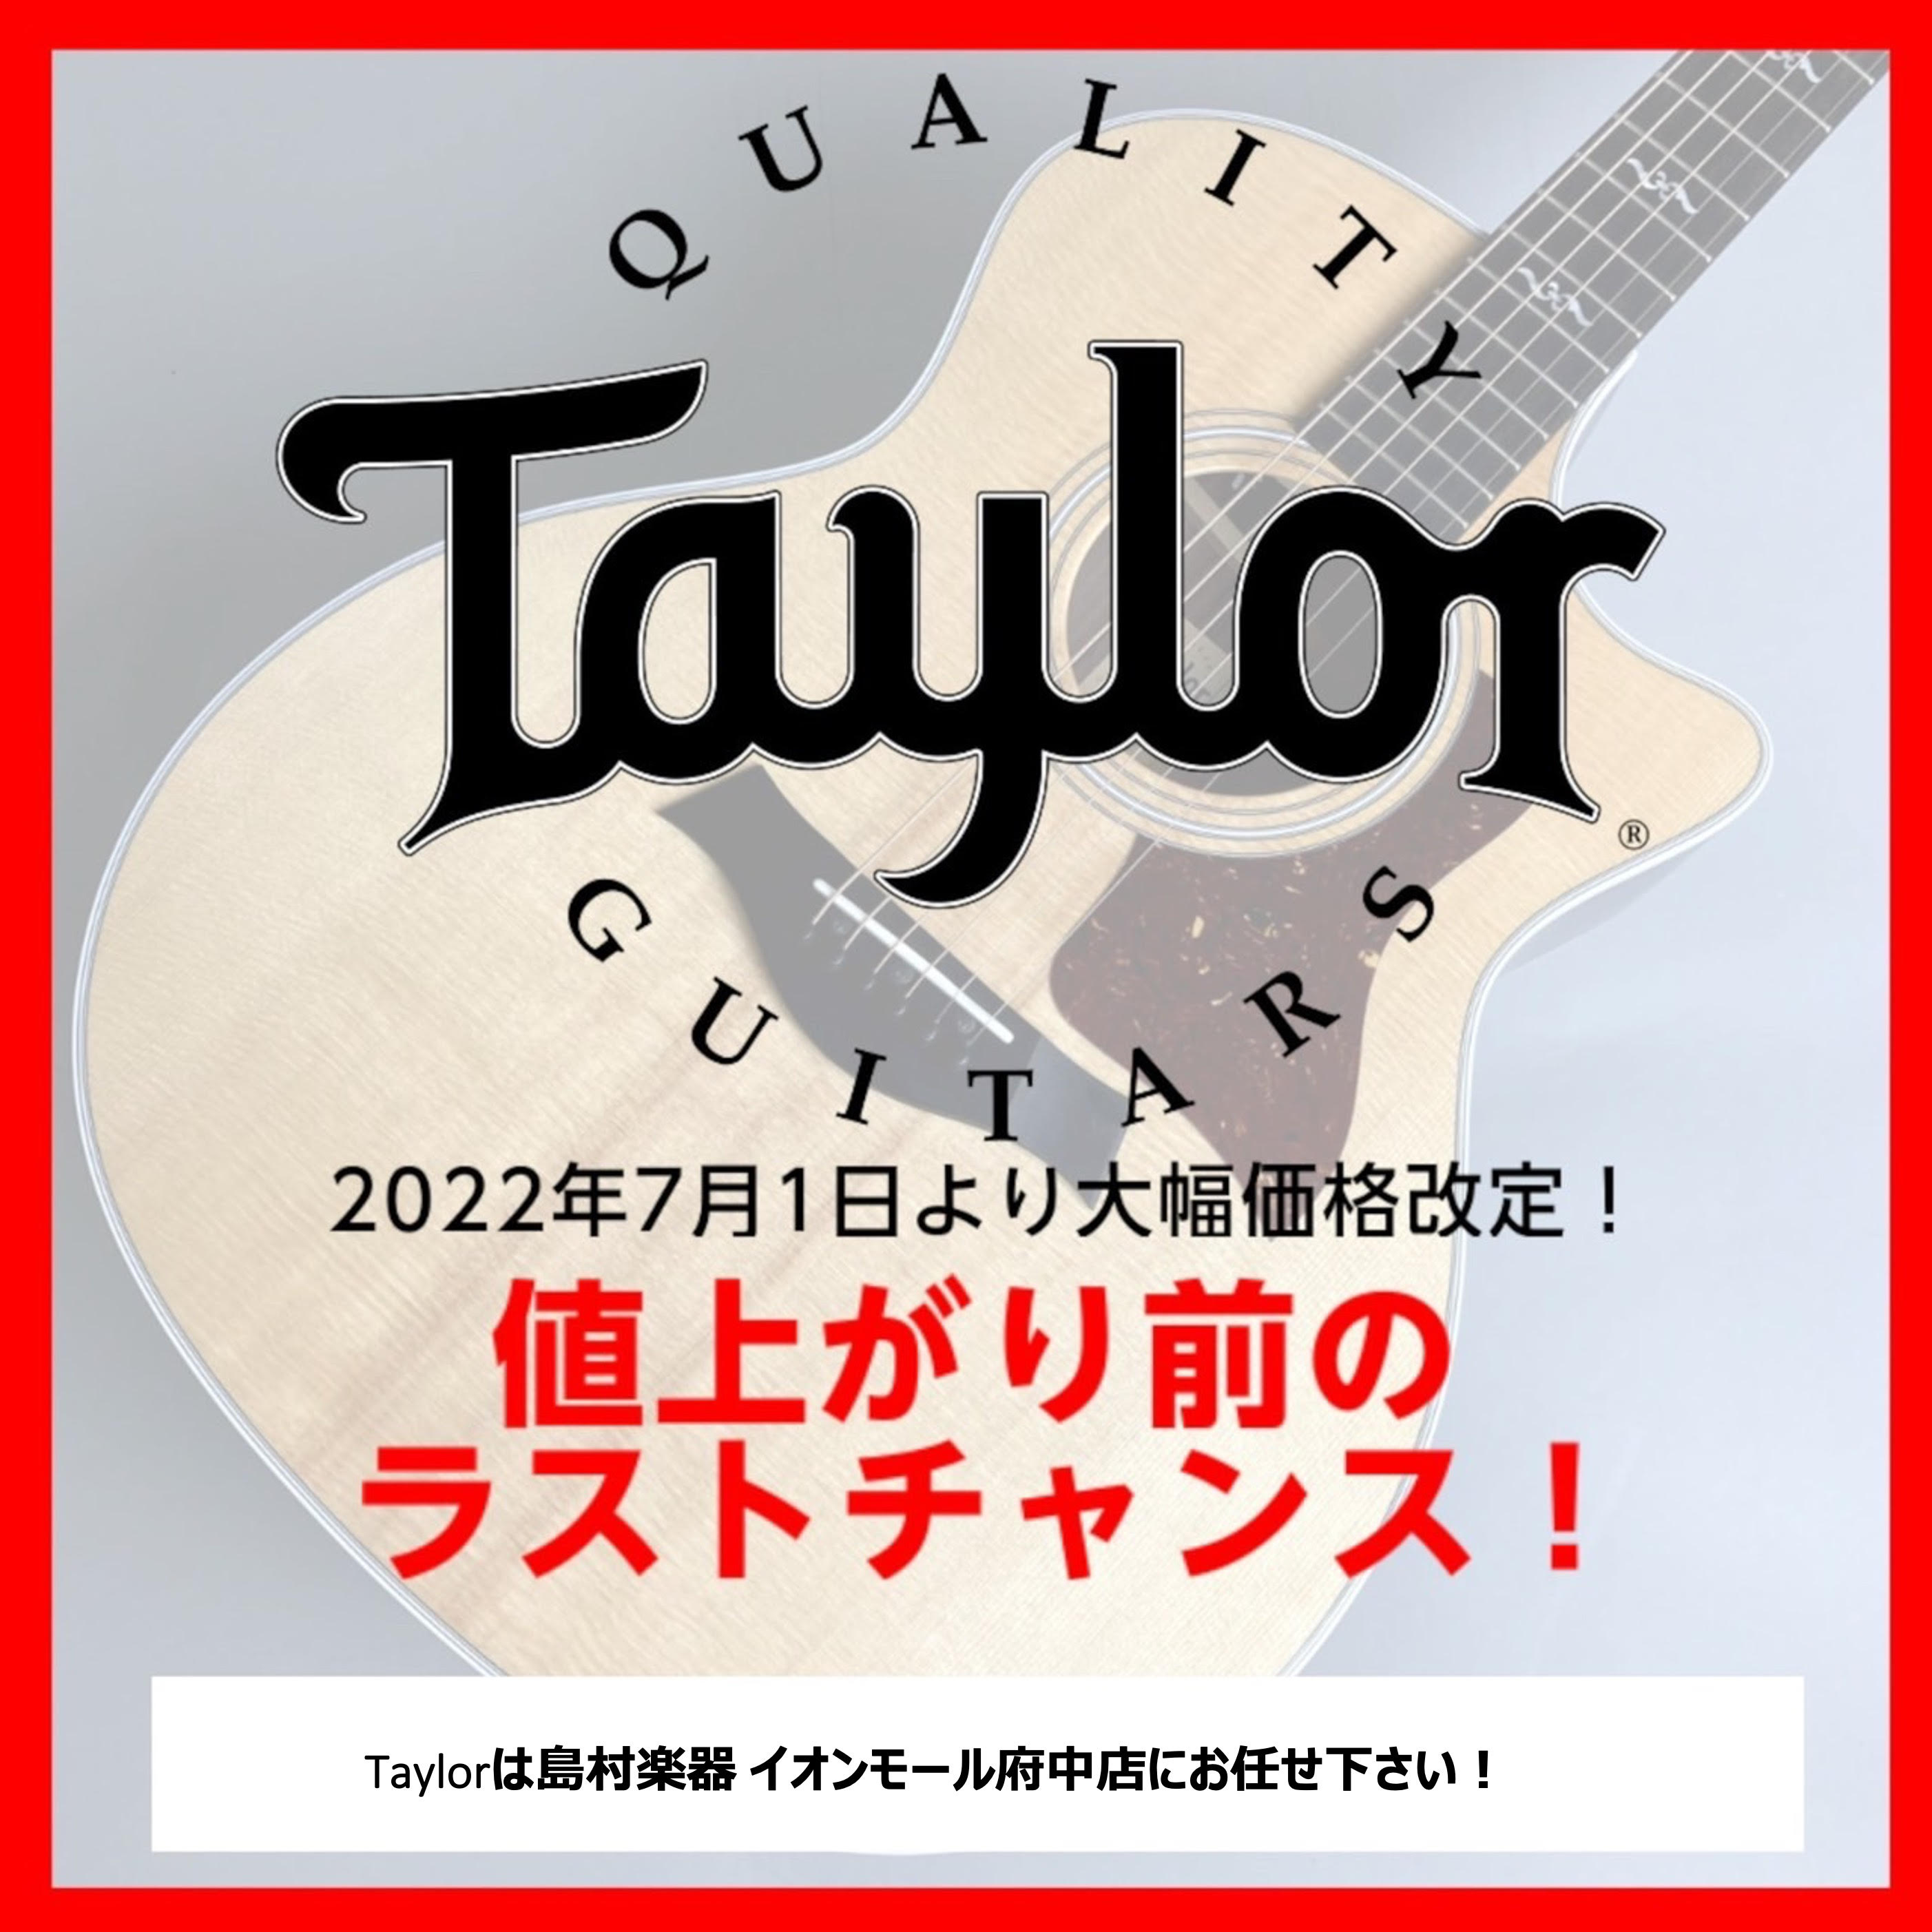 2022年7月1日より国内外で人気の高いアコースティックギターメーカー Taylor（テイラー）が5月に続いて2度目の価格改定を行います。それに伴い、現在店頭にあるTaylor各モデルが【大幅な値上げ予定】となります。是非、価格改定前のこのタイミングに狙っていたモデルをゲットしてはいかがでしょうか？ […]